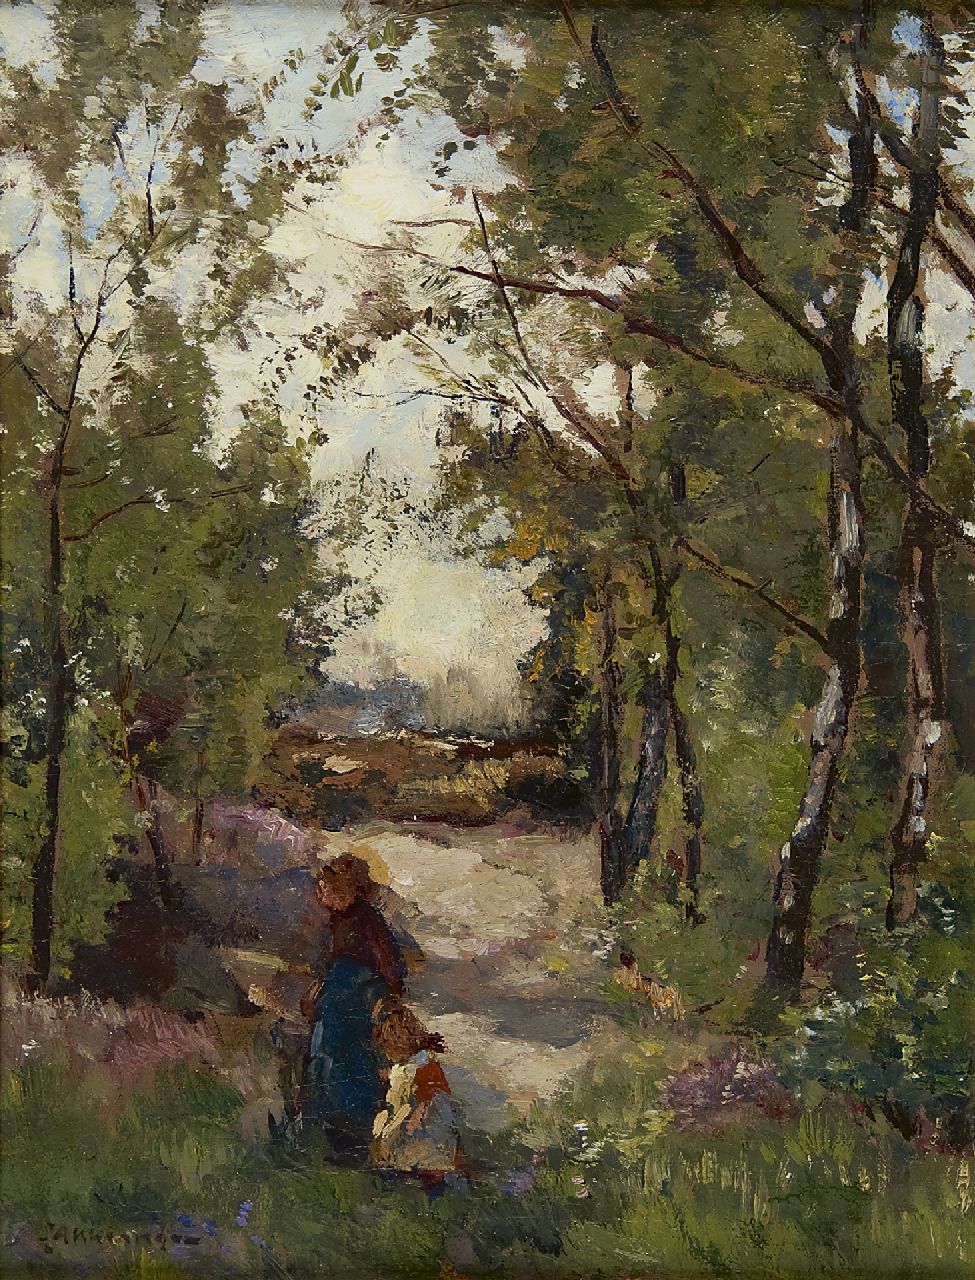 Akkeringa J.E.H.  | 'Johannes Evert' Hendrik Akkeringa, Aan de hand van moeder in het bos, olieverf op doek 33,3 x 24,6 cm, gesigneerd linksonder